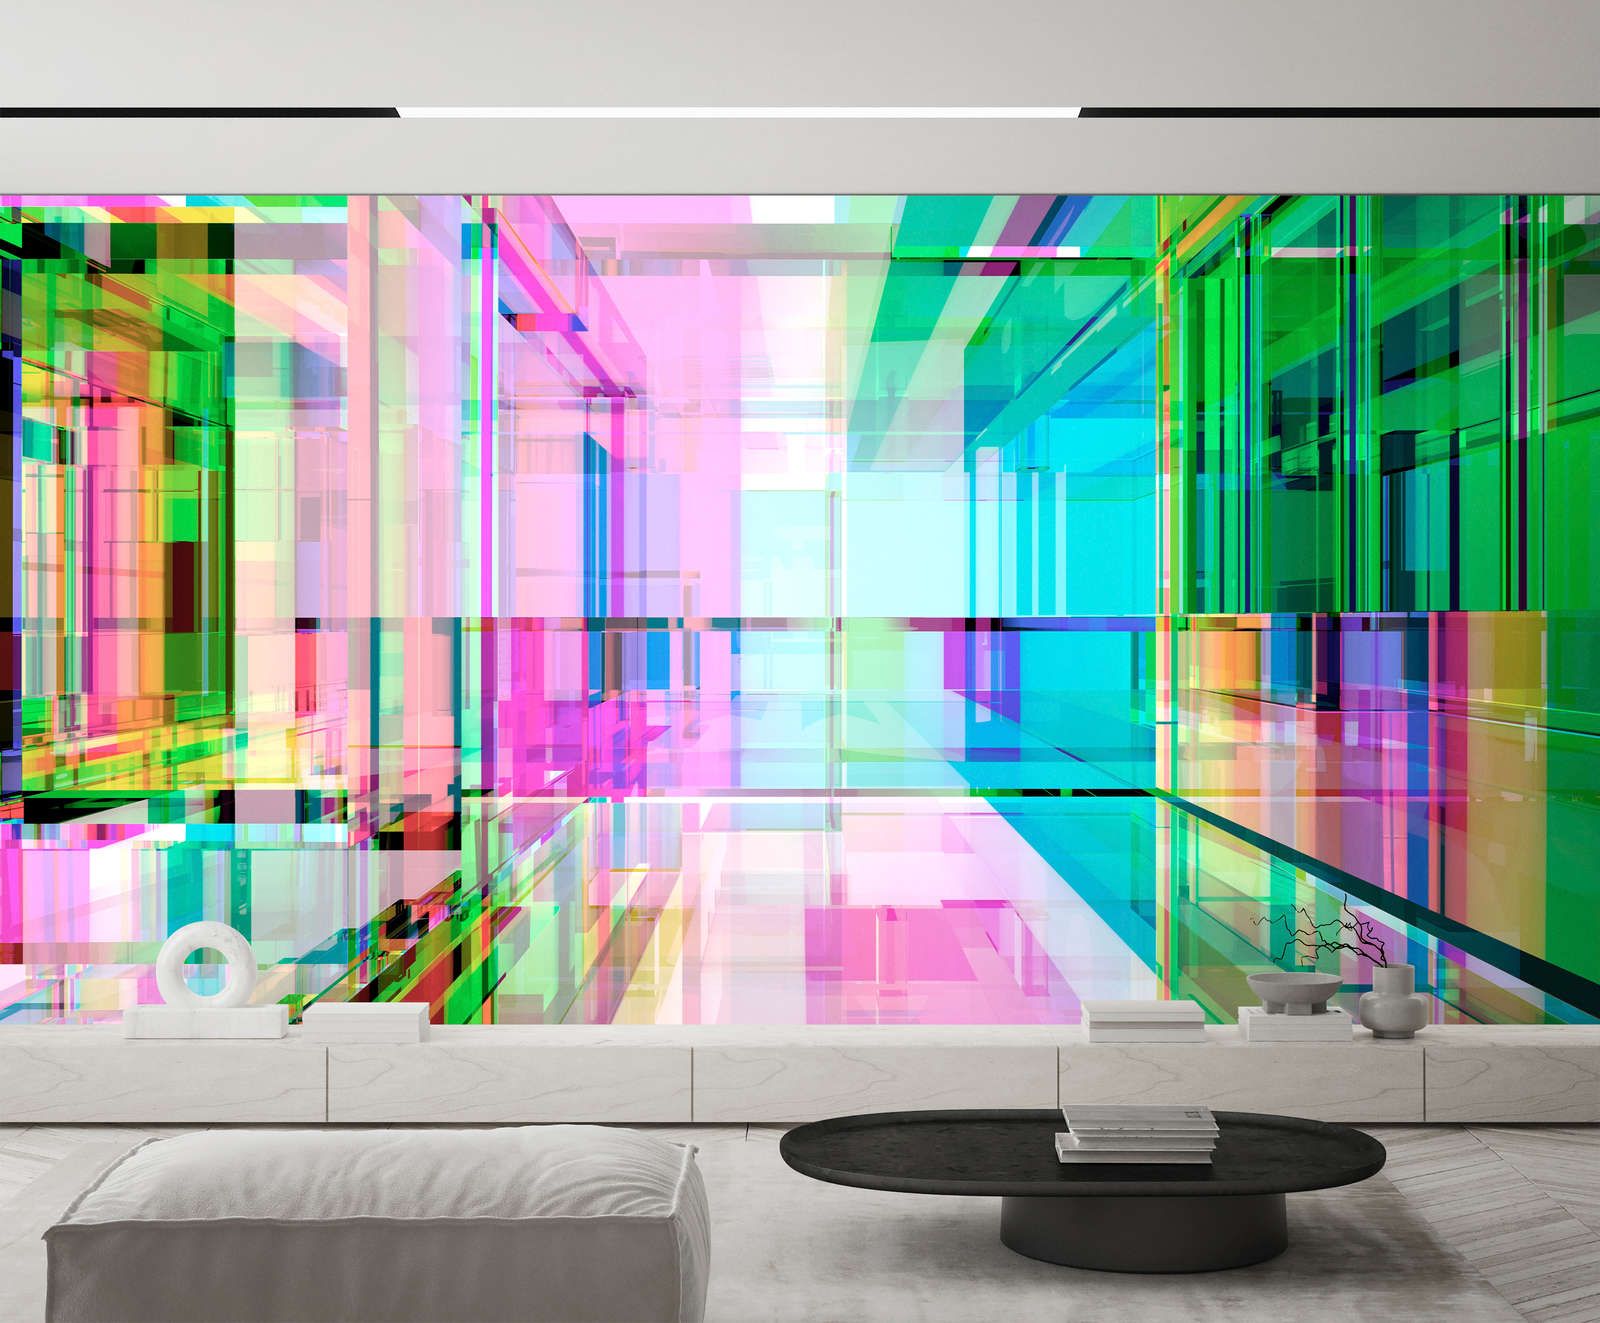             Digital behang »focus« - Futuristisch ontwerp in een vierde dimensie in neonkleuren - Gladde, licht parelmoerachtige vliesstof
        